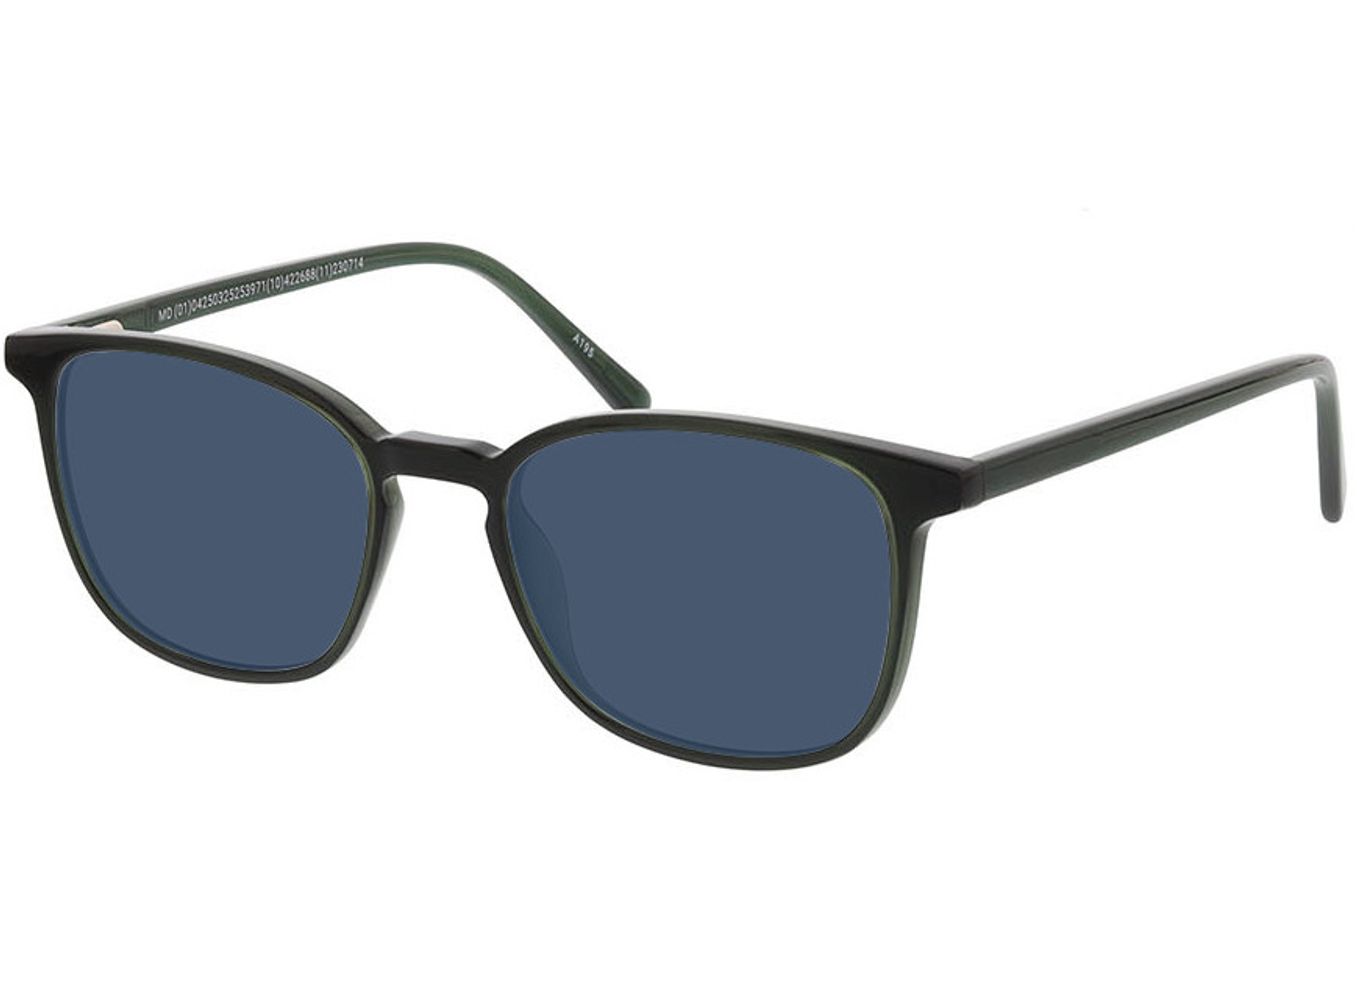 New Haven - grün Sonnenbrille ohne Sehstärke, Vollrand, Rechteckig von Brille24 Collection